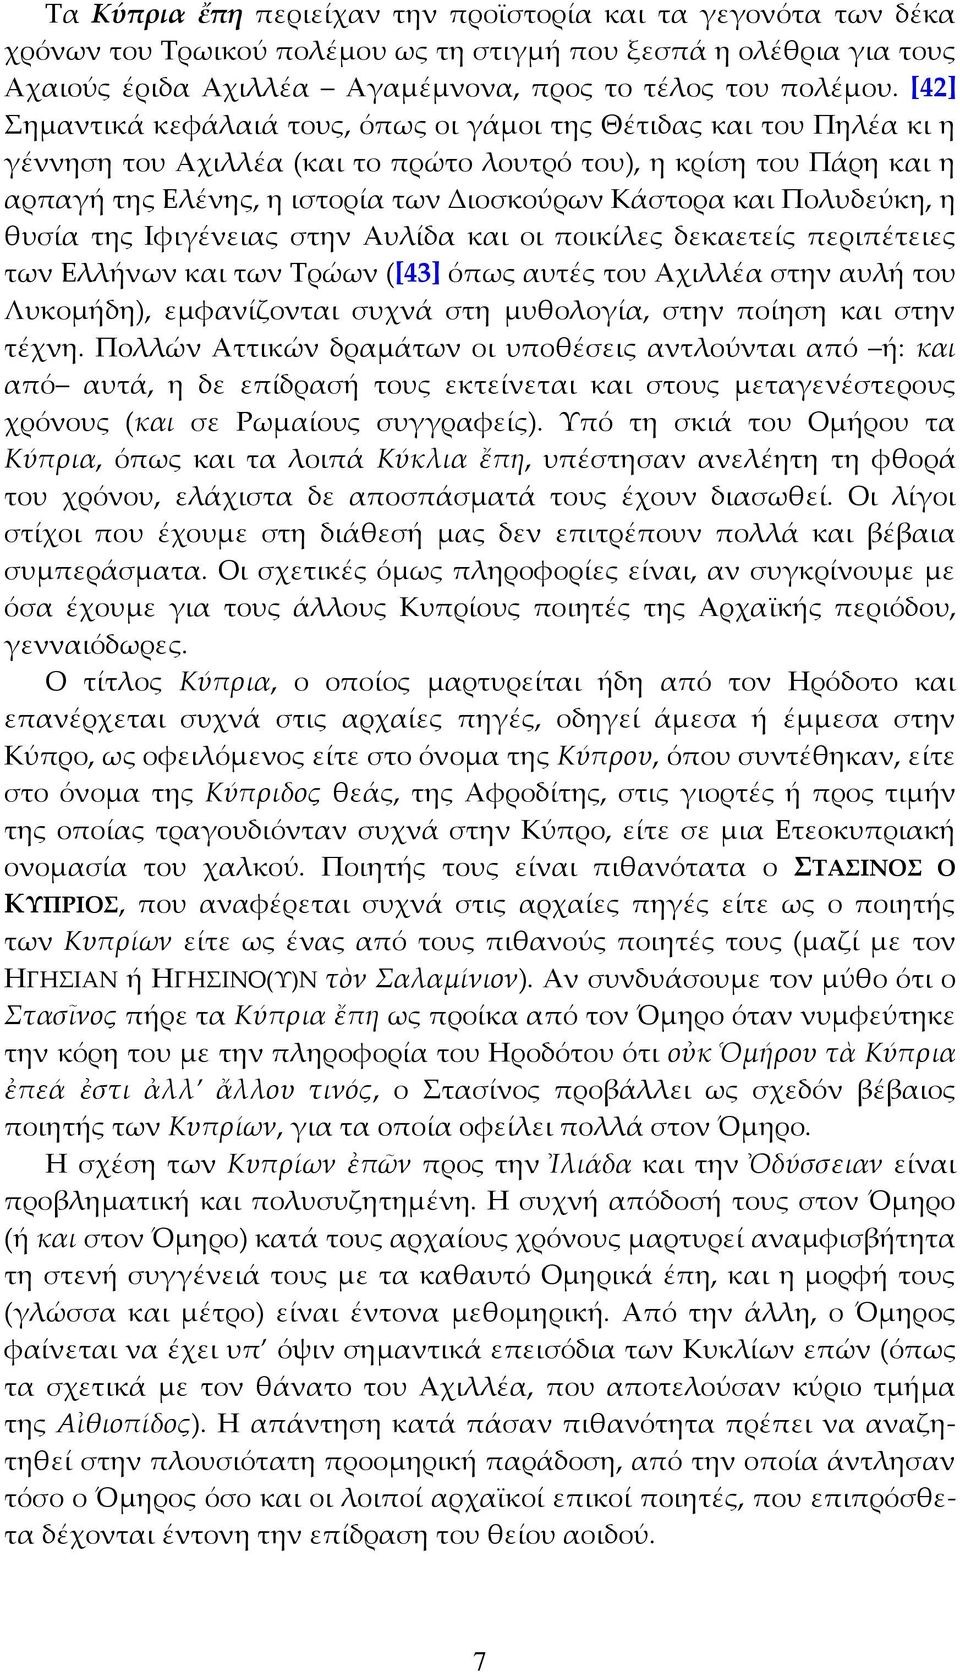 και Πολυδεύκη, η θυσία της Ιφιγένειας στην Αυλίδα και οι ποικίλες δεκαετείς περιπέτειες των Ελλήνων και των Τρώων ([43] όπως αυτές του Αχιλλέα στην αυλή του Λυκομήδη), εμφανίζονται συχνά στη